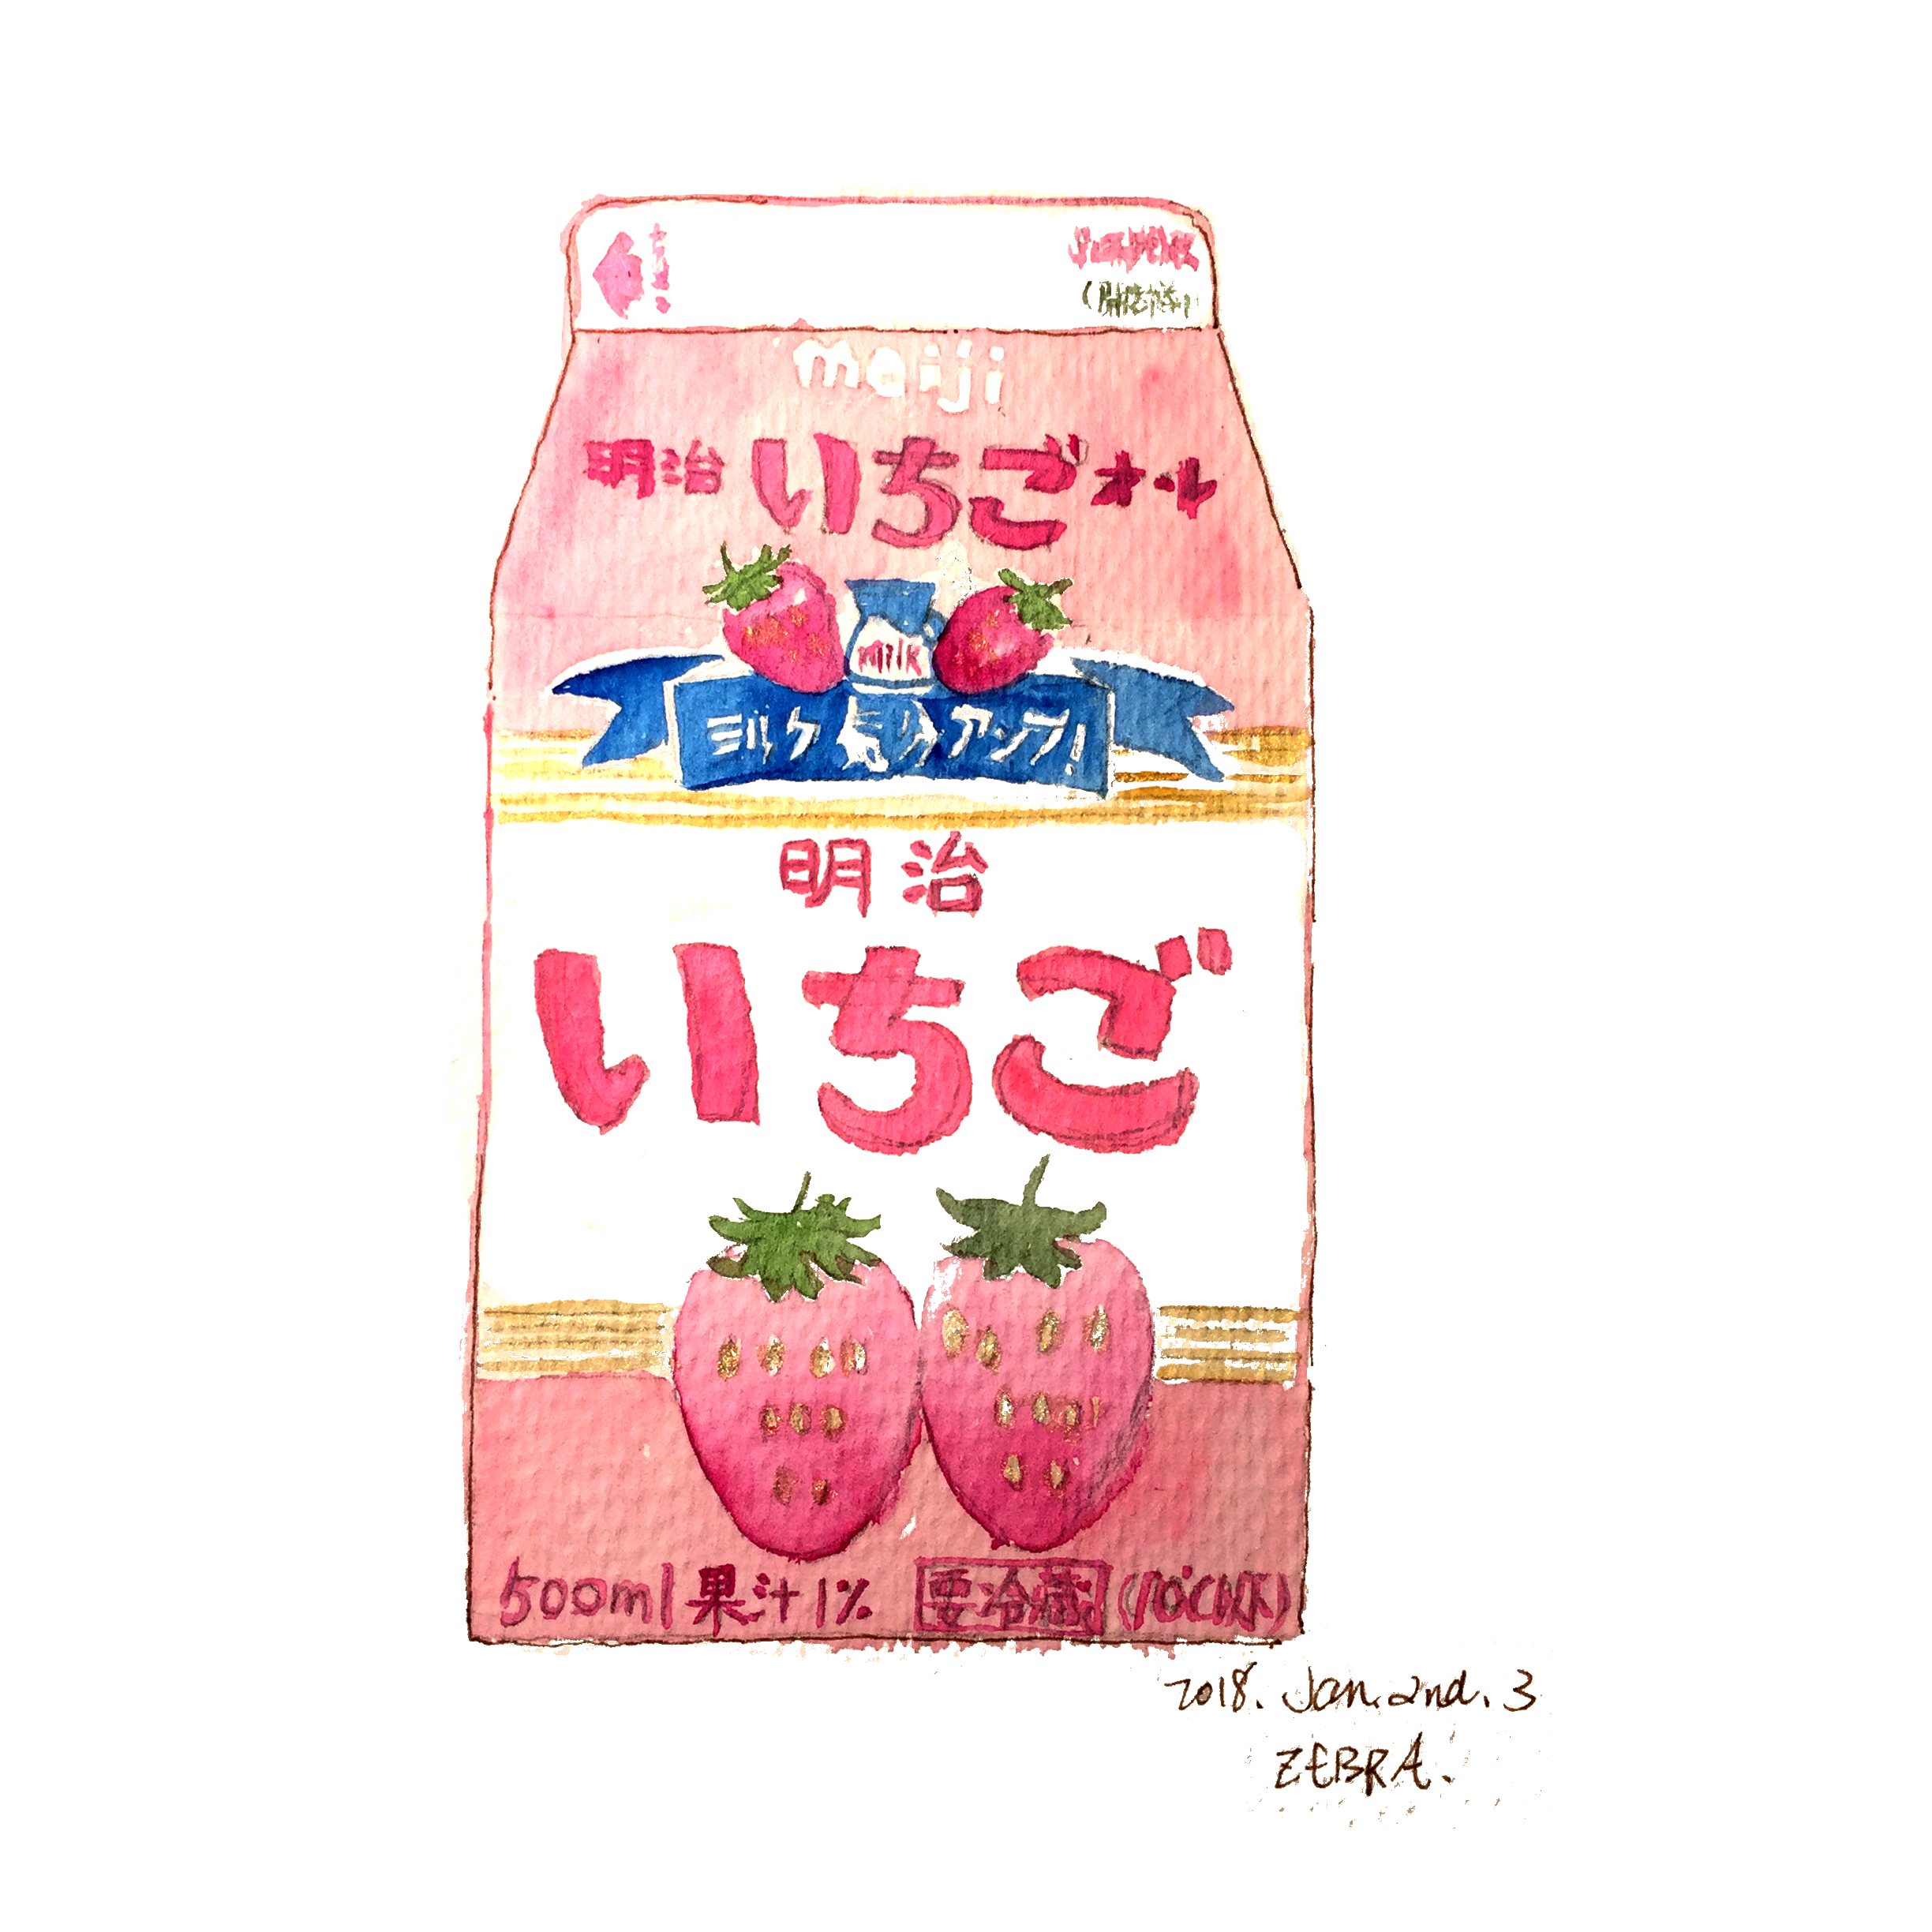 2018 新坑 淡彩 速写 插画 手绘 美食 饮料 草莓牛奶 日本